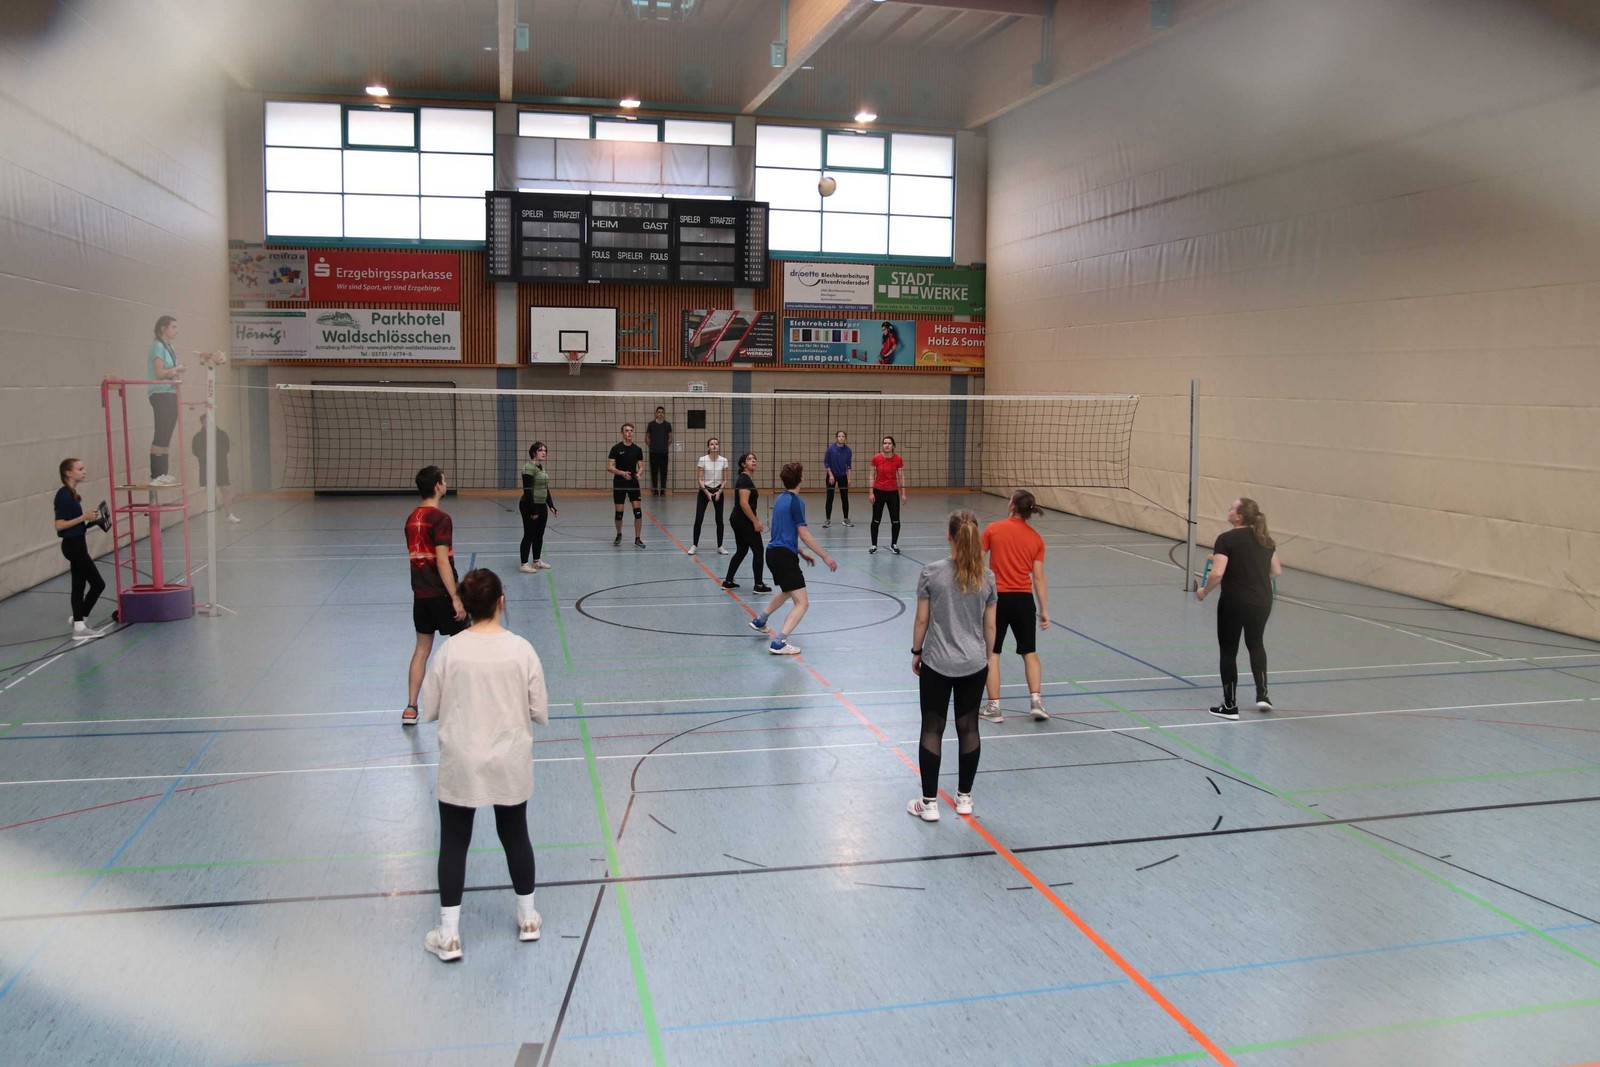 VolleyballTAGturnier in Annaberg-Buchholz